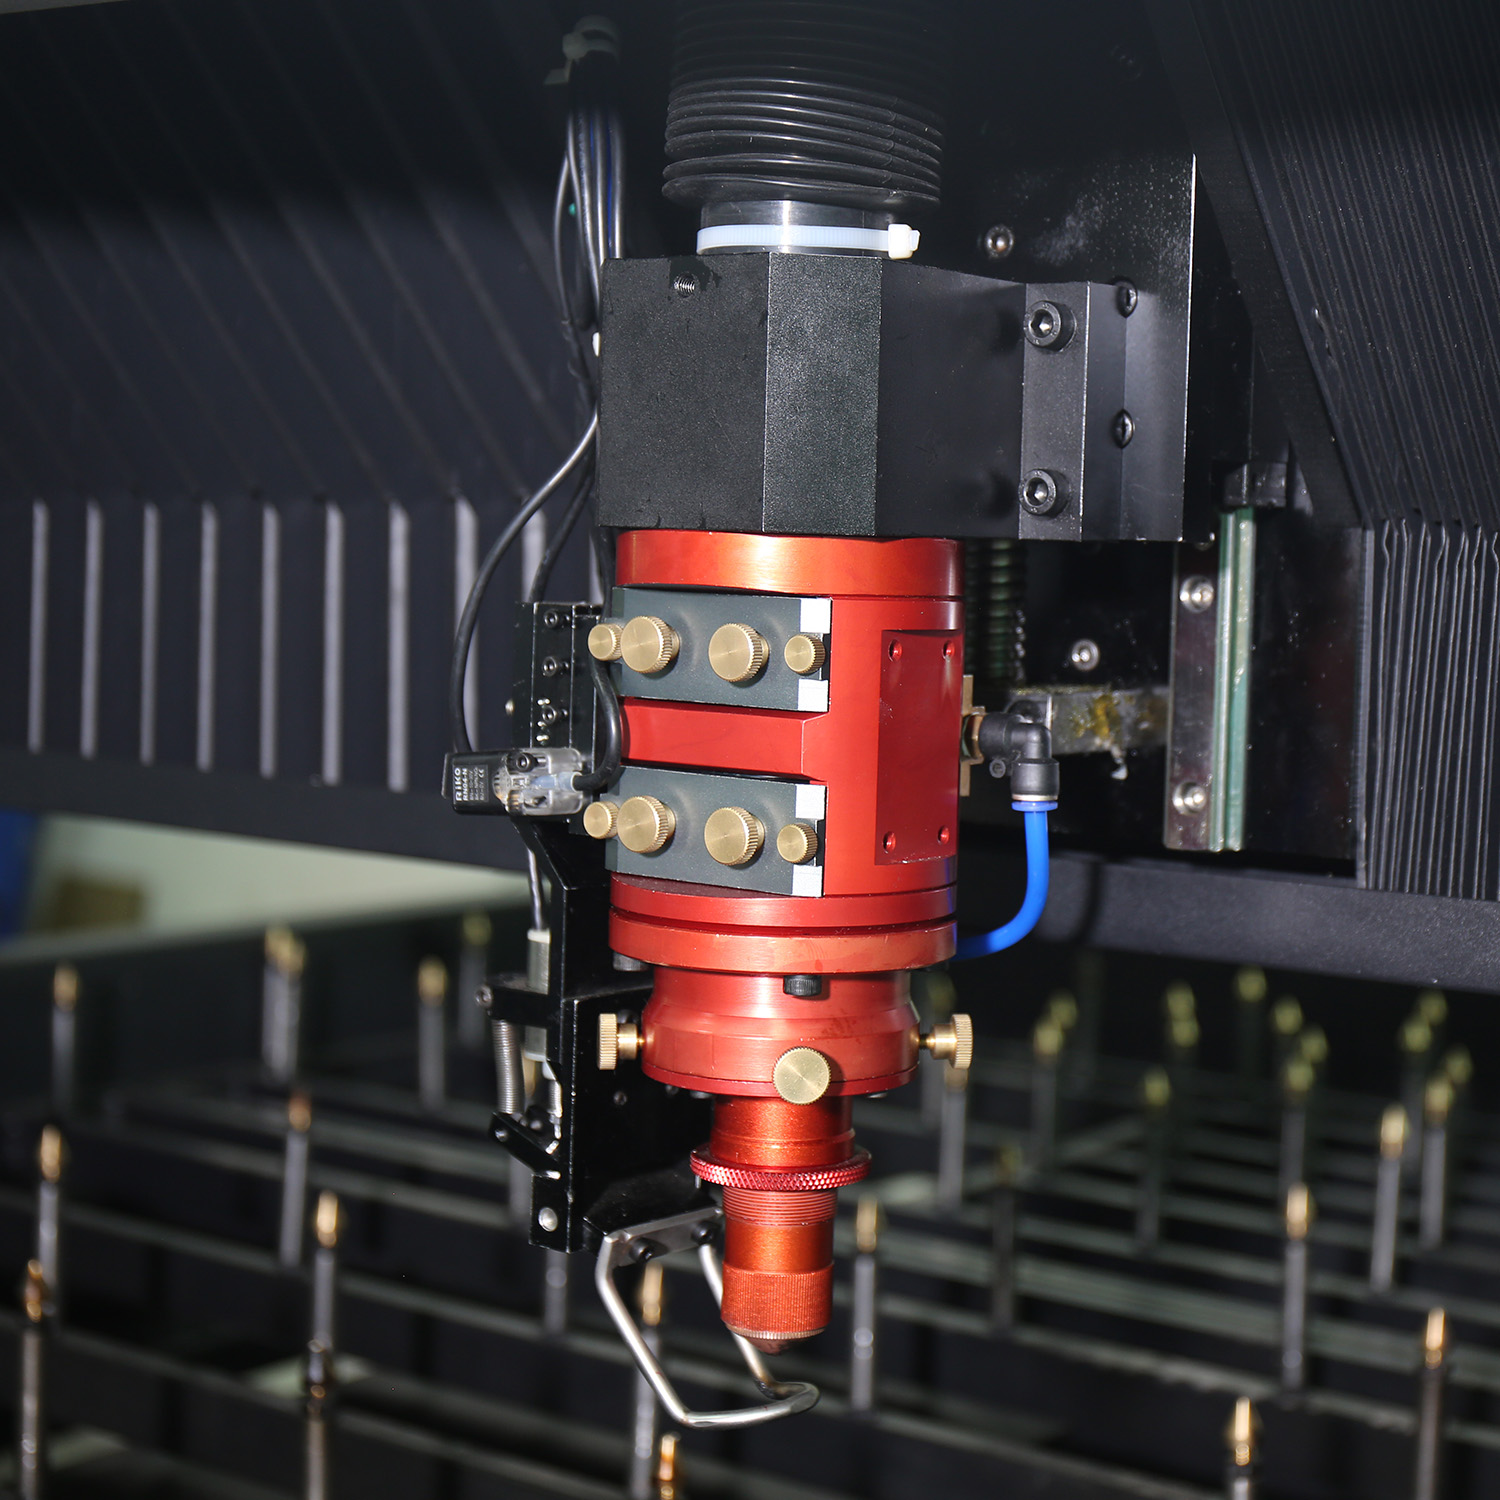 Machine de découpe laser CO2 en bois plate et rotative pour la fabrication de panneaux